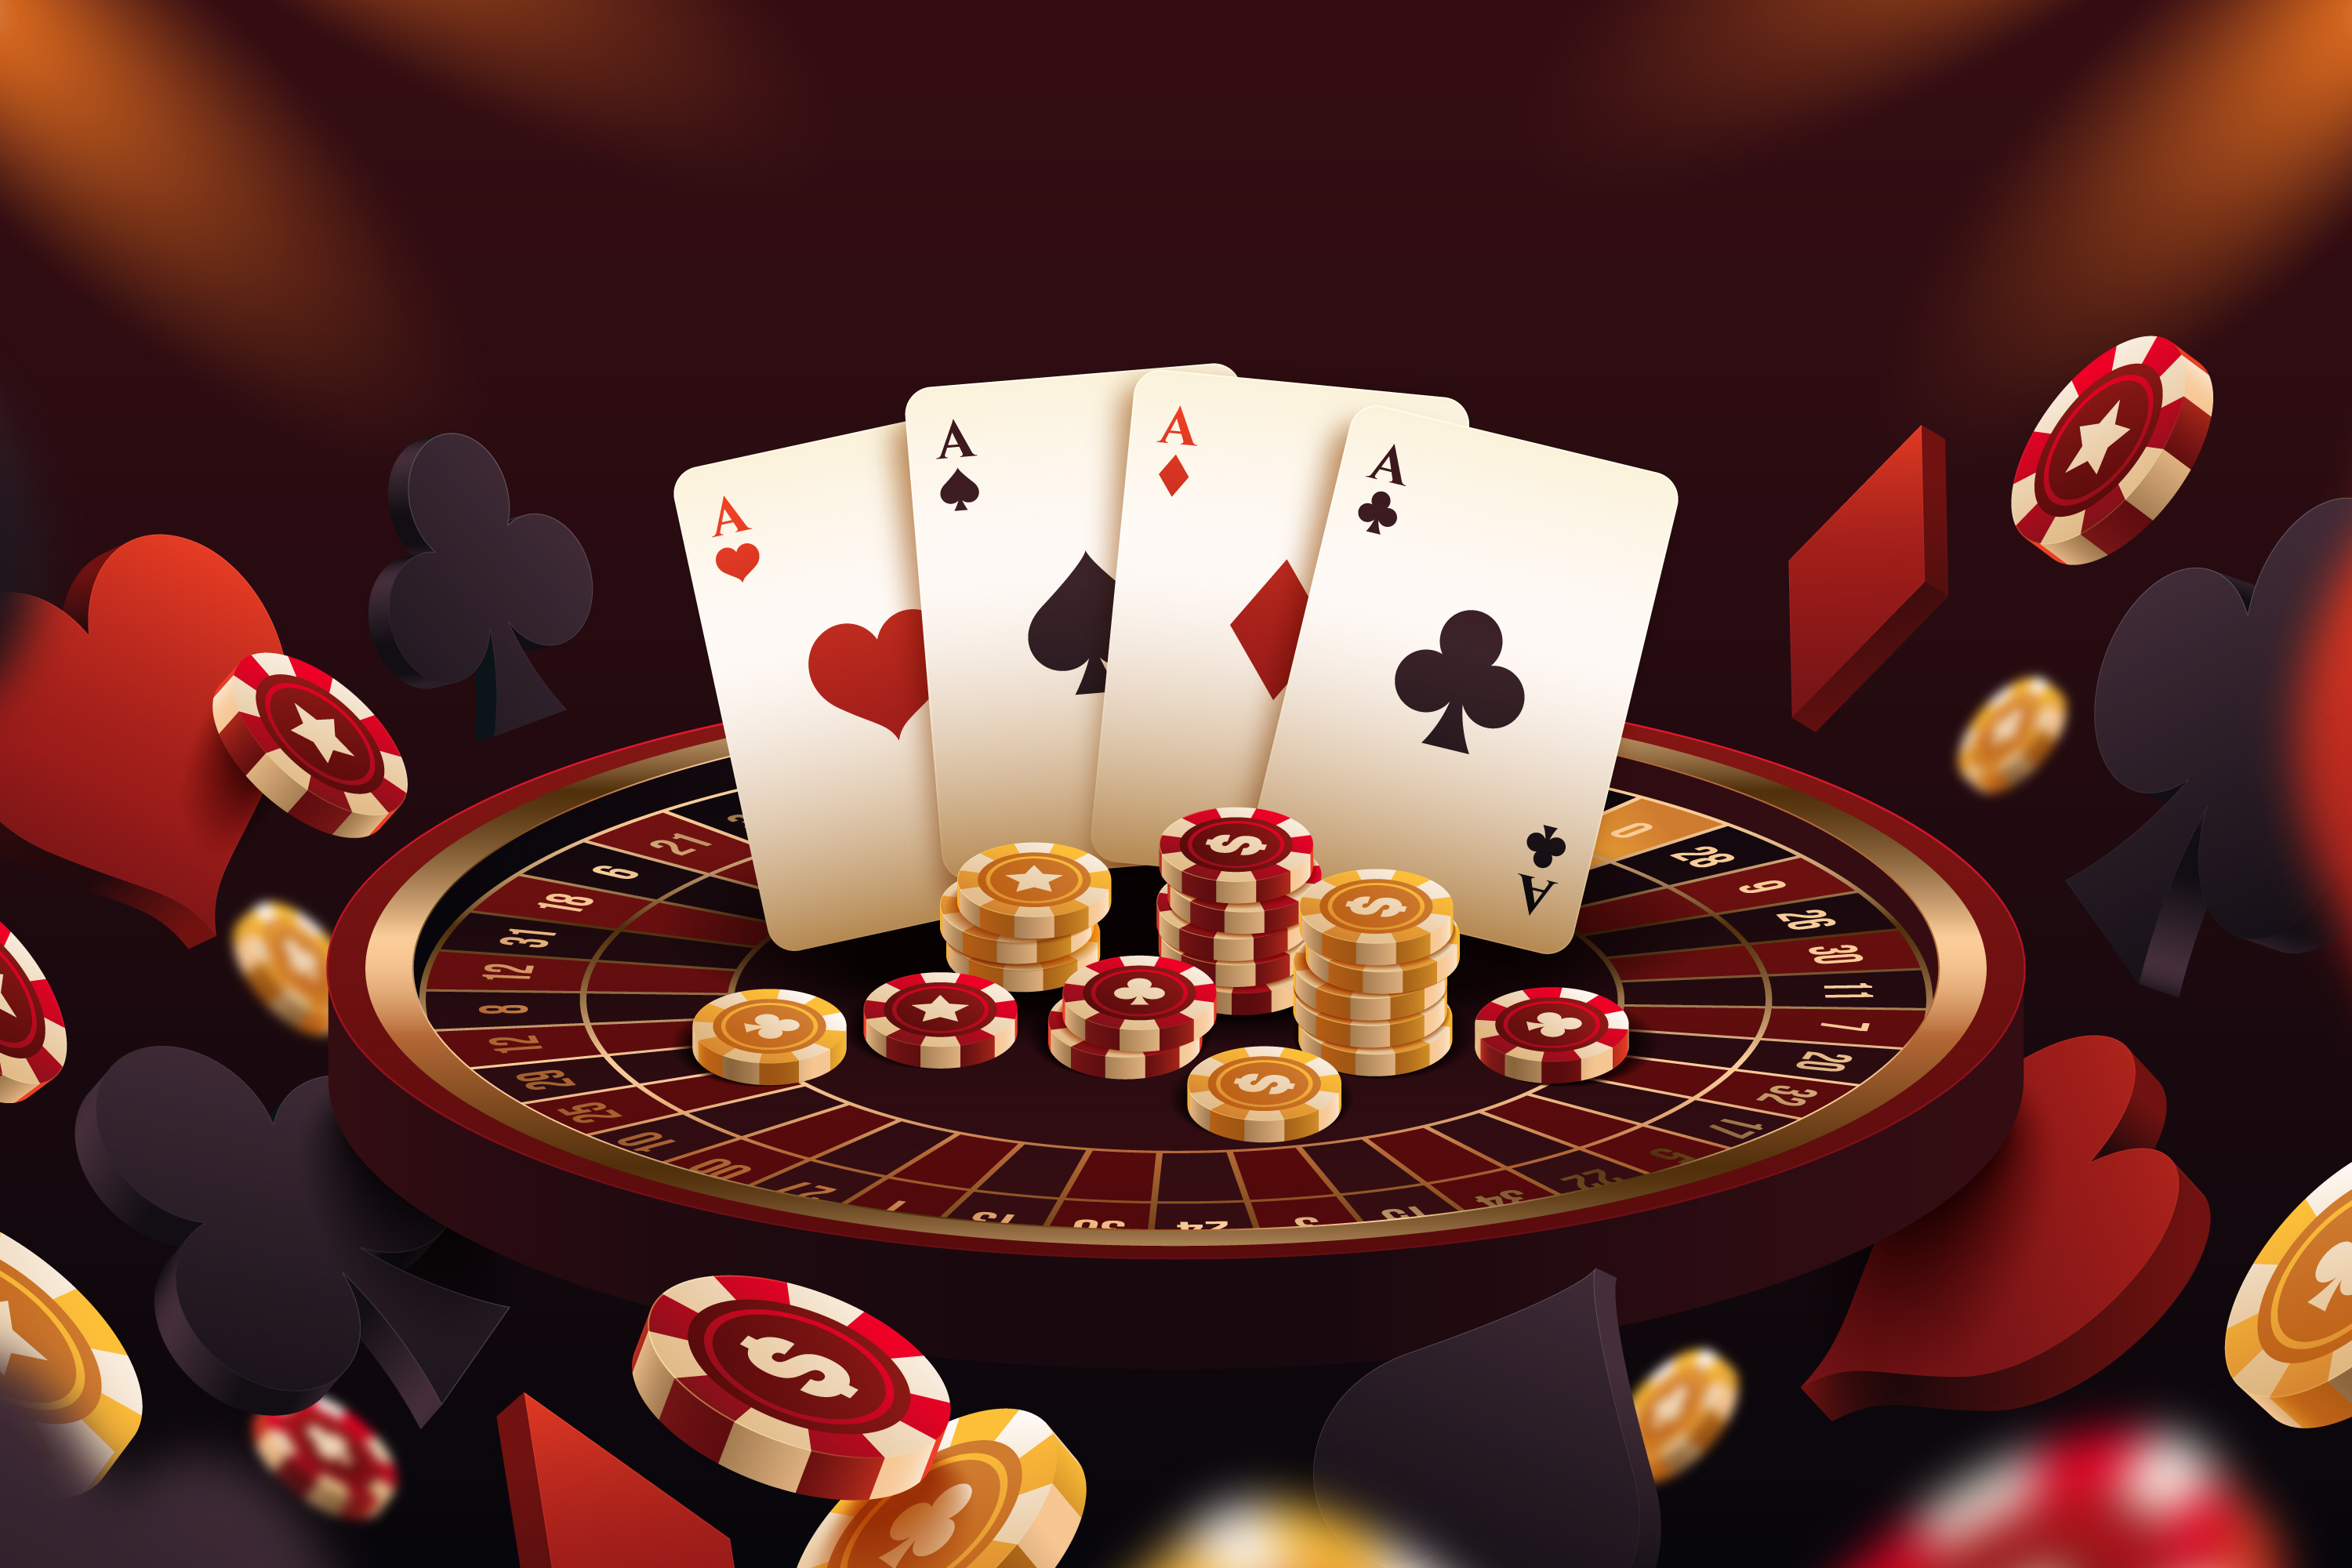 Pocket Cards in Poker